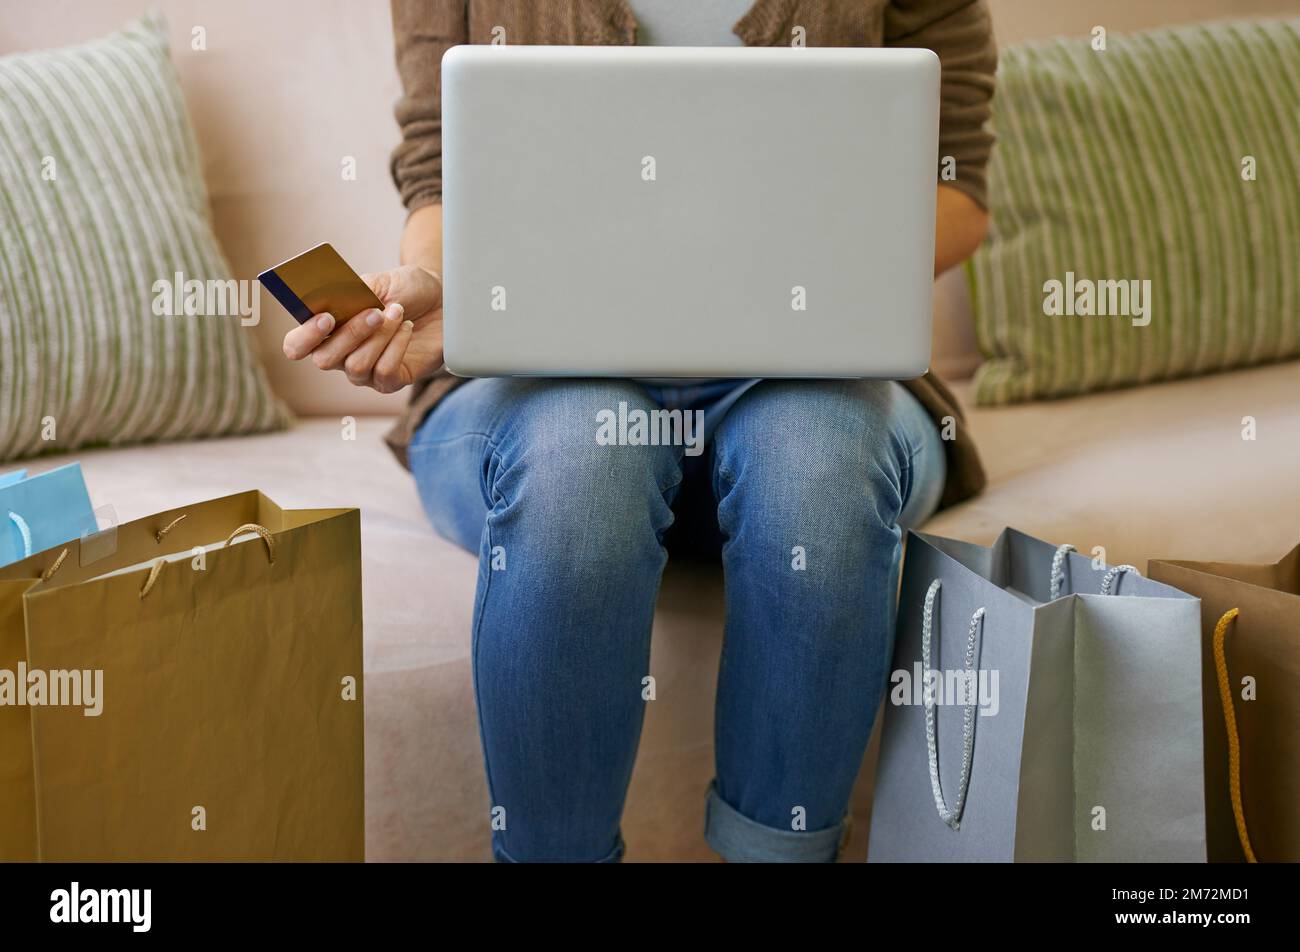 Fare acquisti online è molto comodo. una donna che fa un po' di shopping online a casa con il suo notebook. Foto Stock